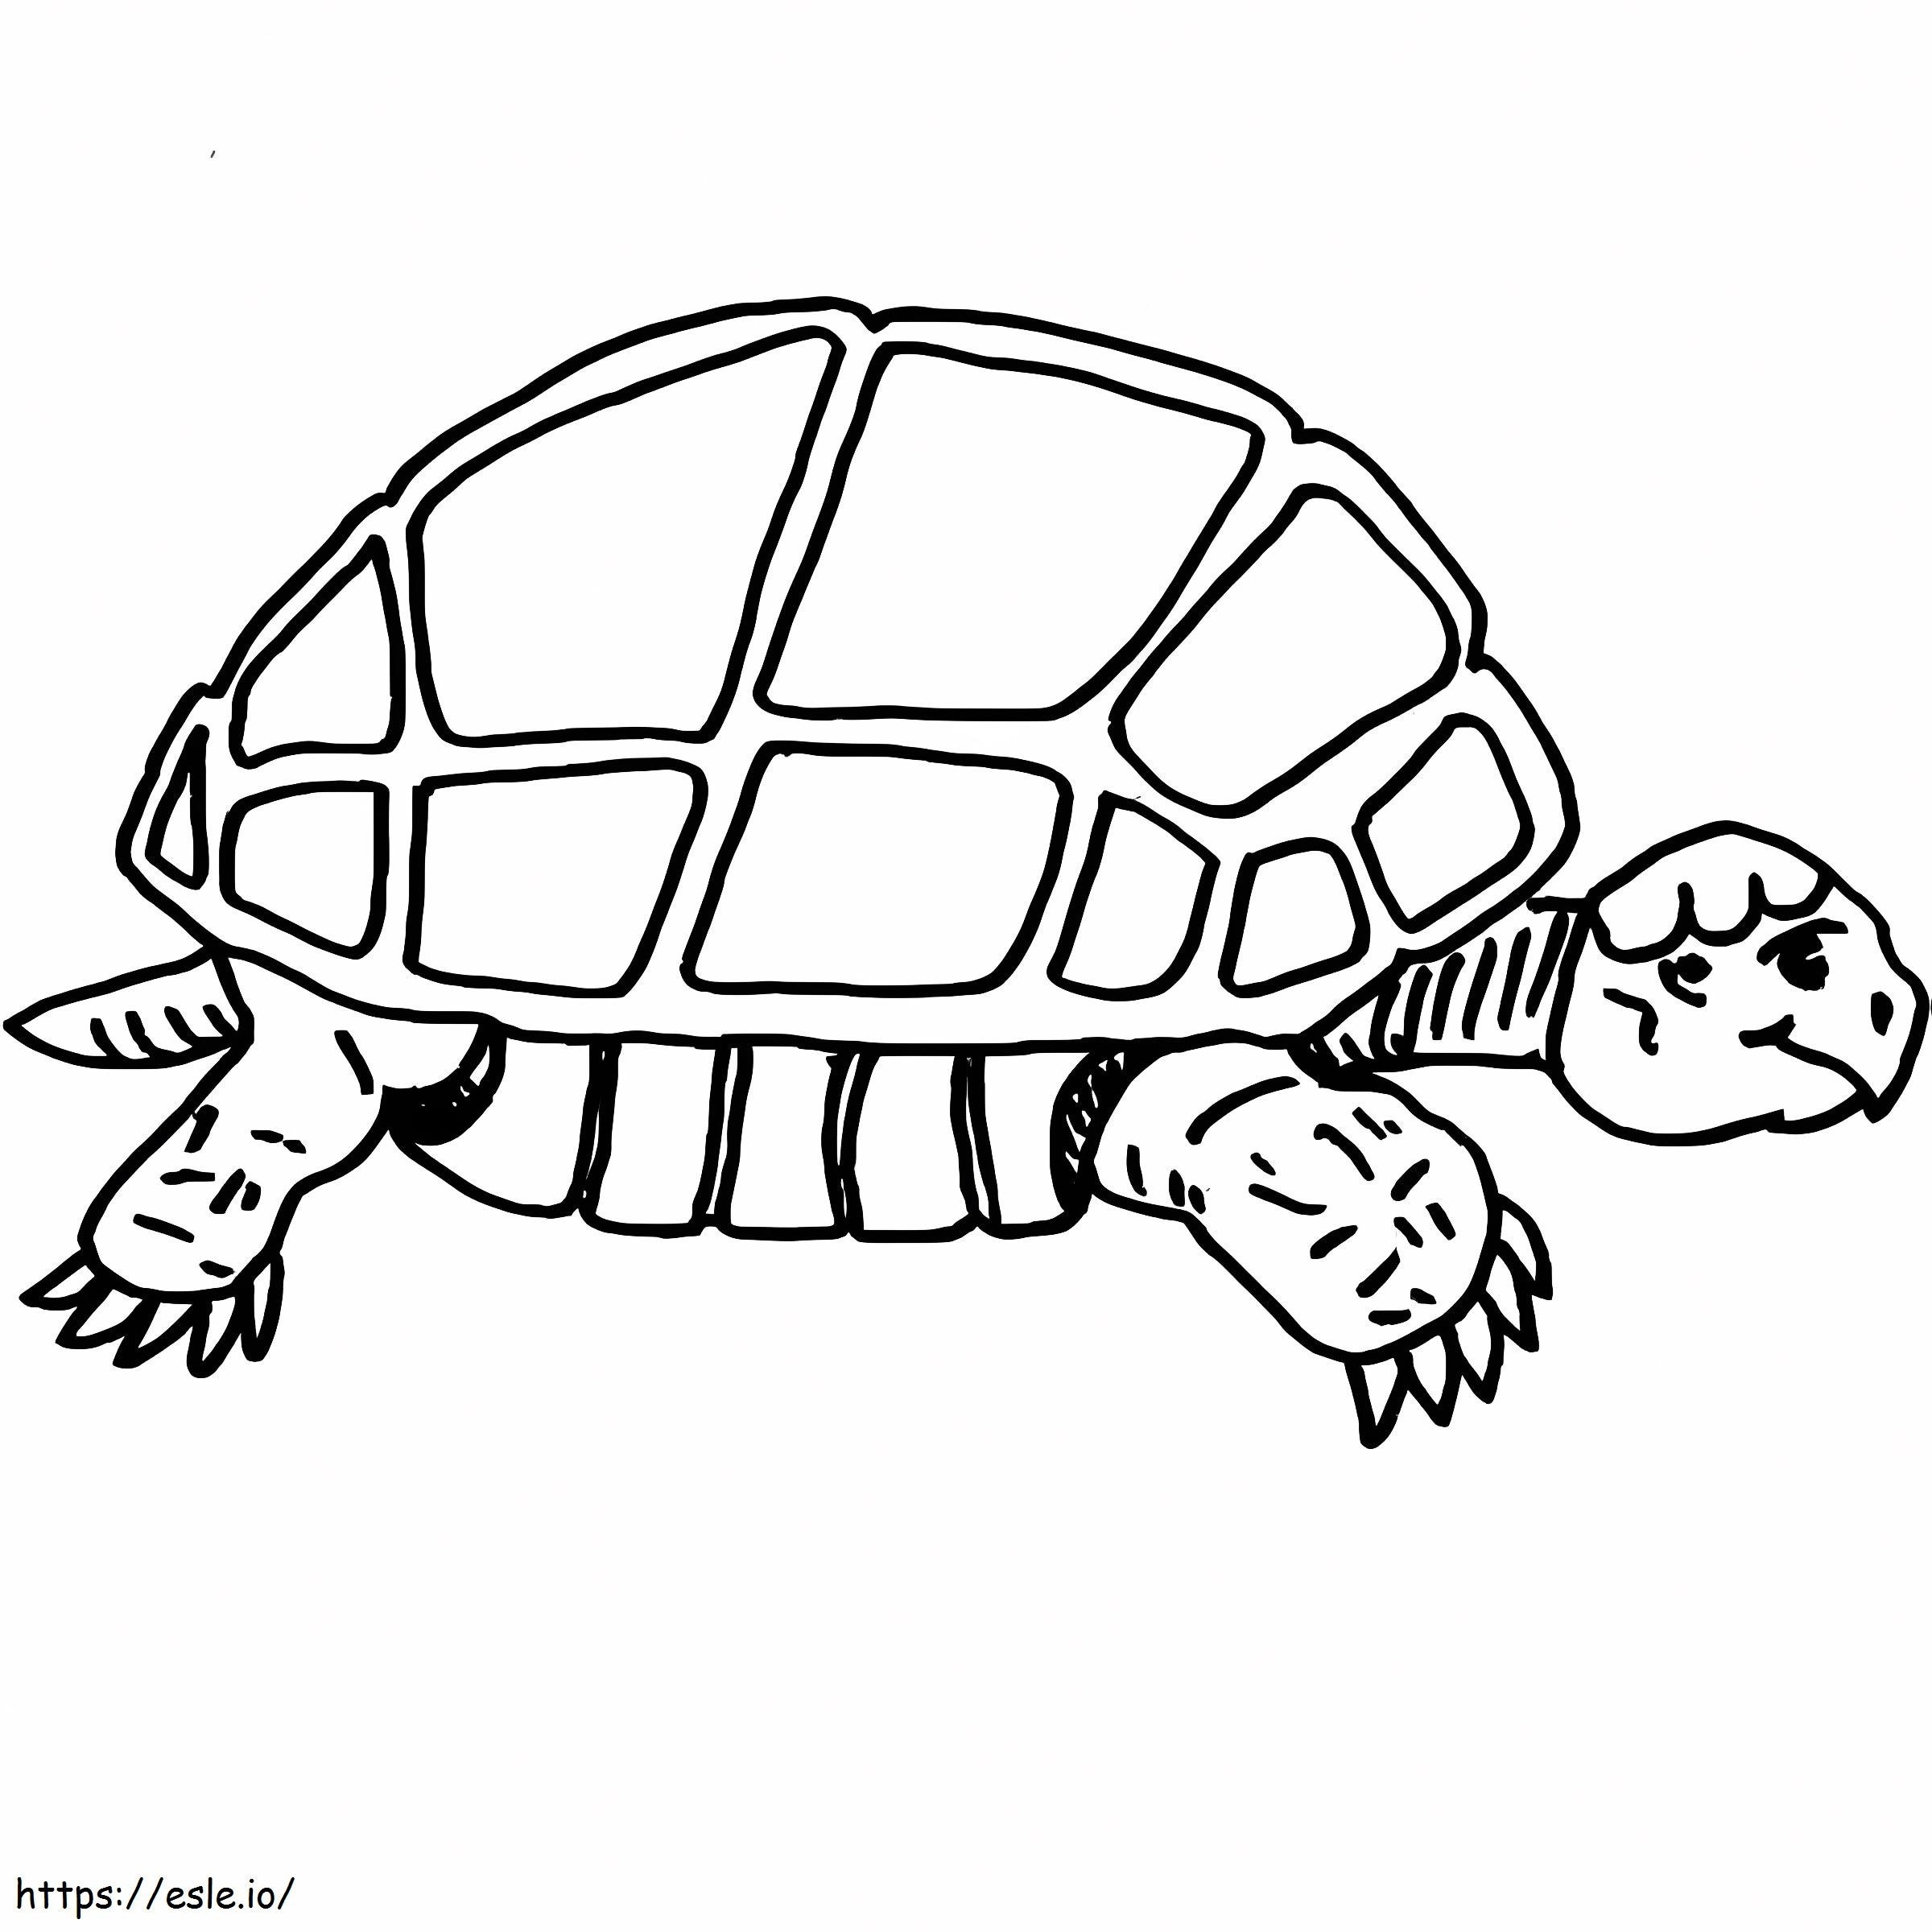 Langsame Schildkröte ausmalbilder